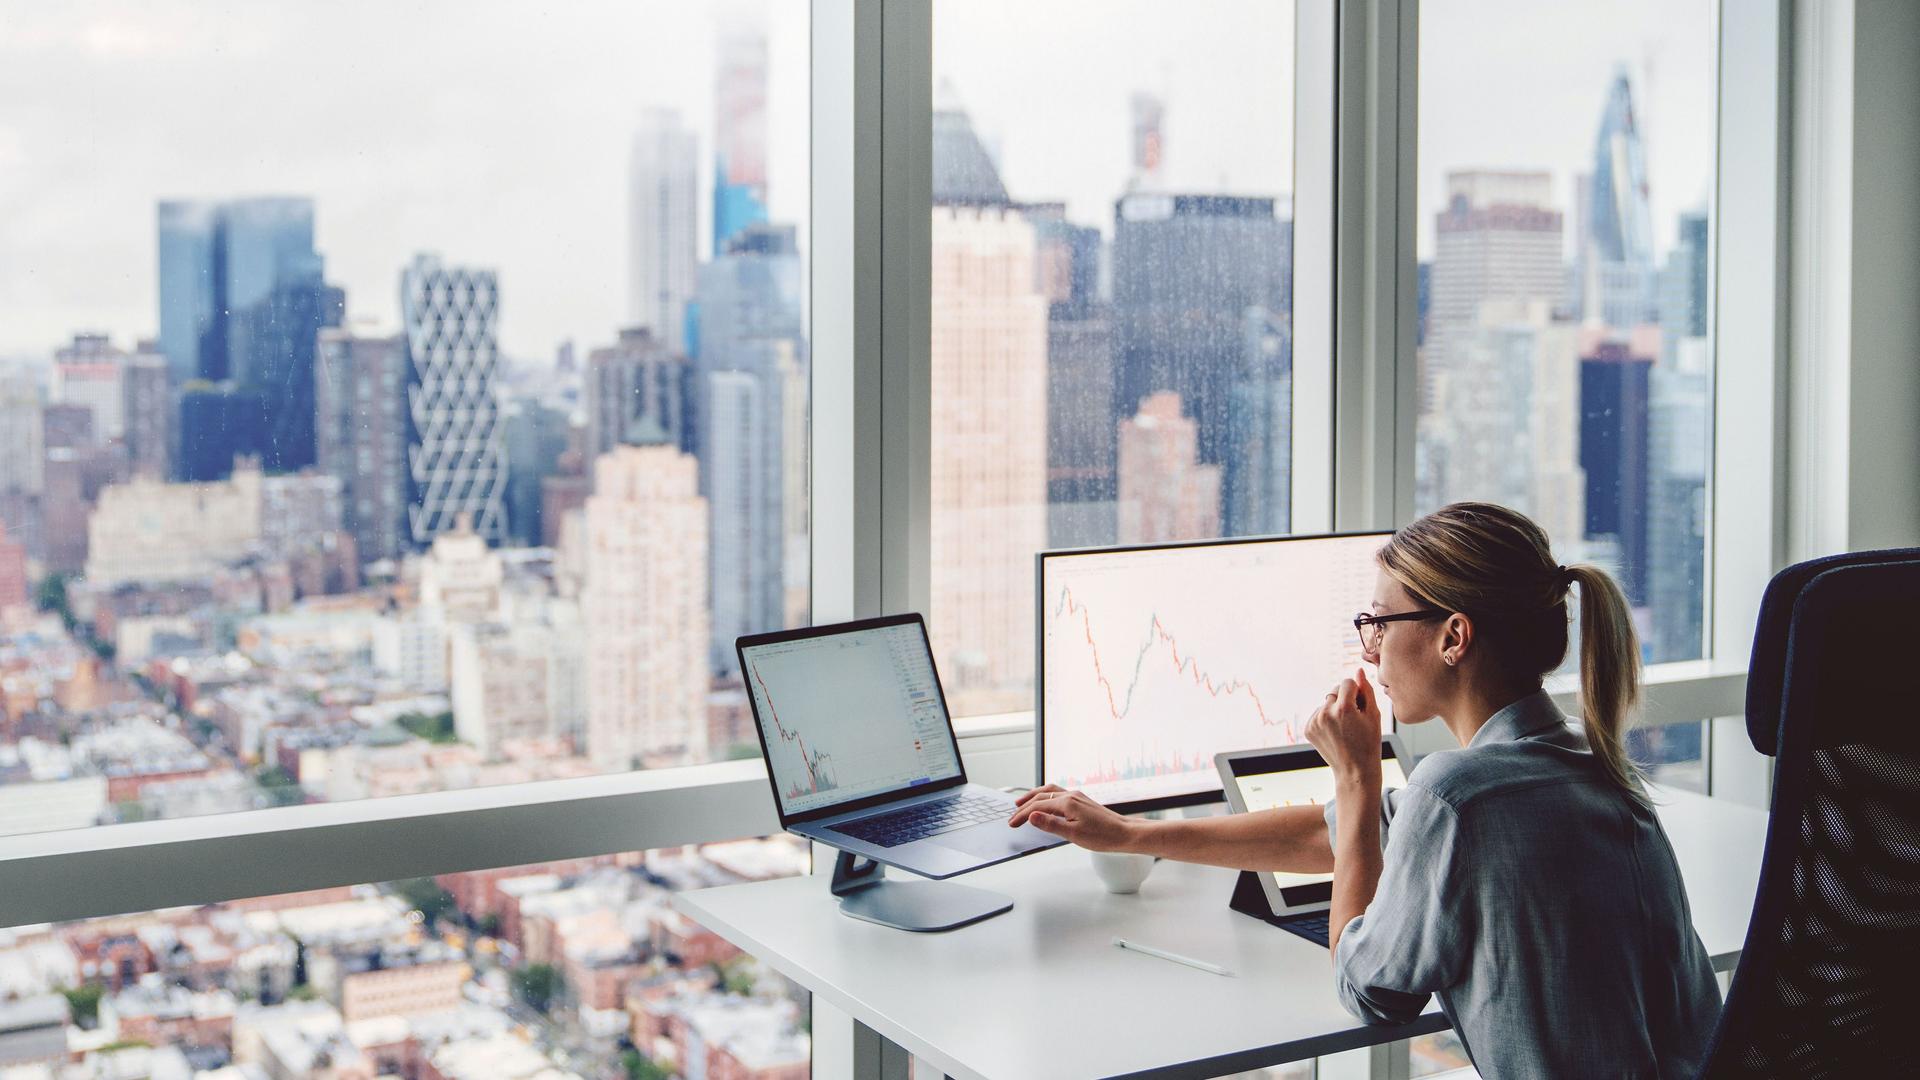 Konzentriert arbeitende Frau vor einem Panoramafenster sitzt an einem Schreibtisch mit zwei Bildschirmen. Im Hintergrund ist eine verschwommene Skyline zu erkennen.